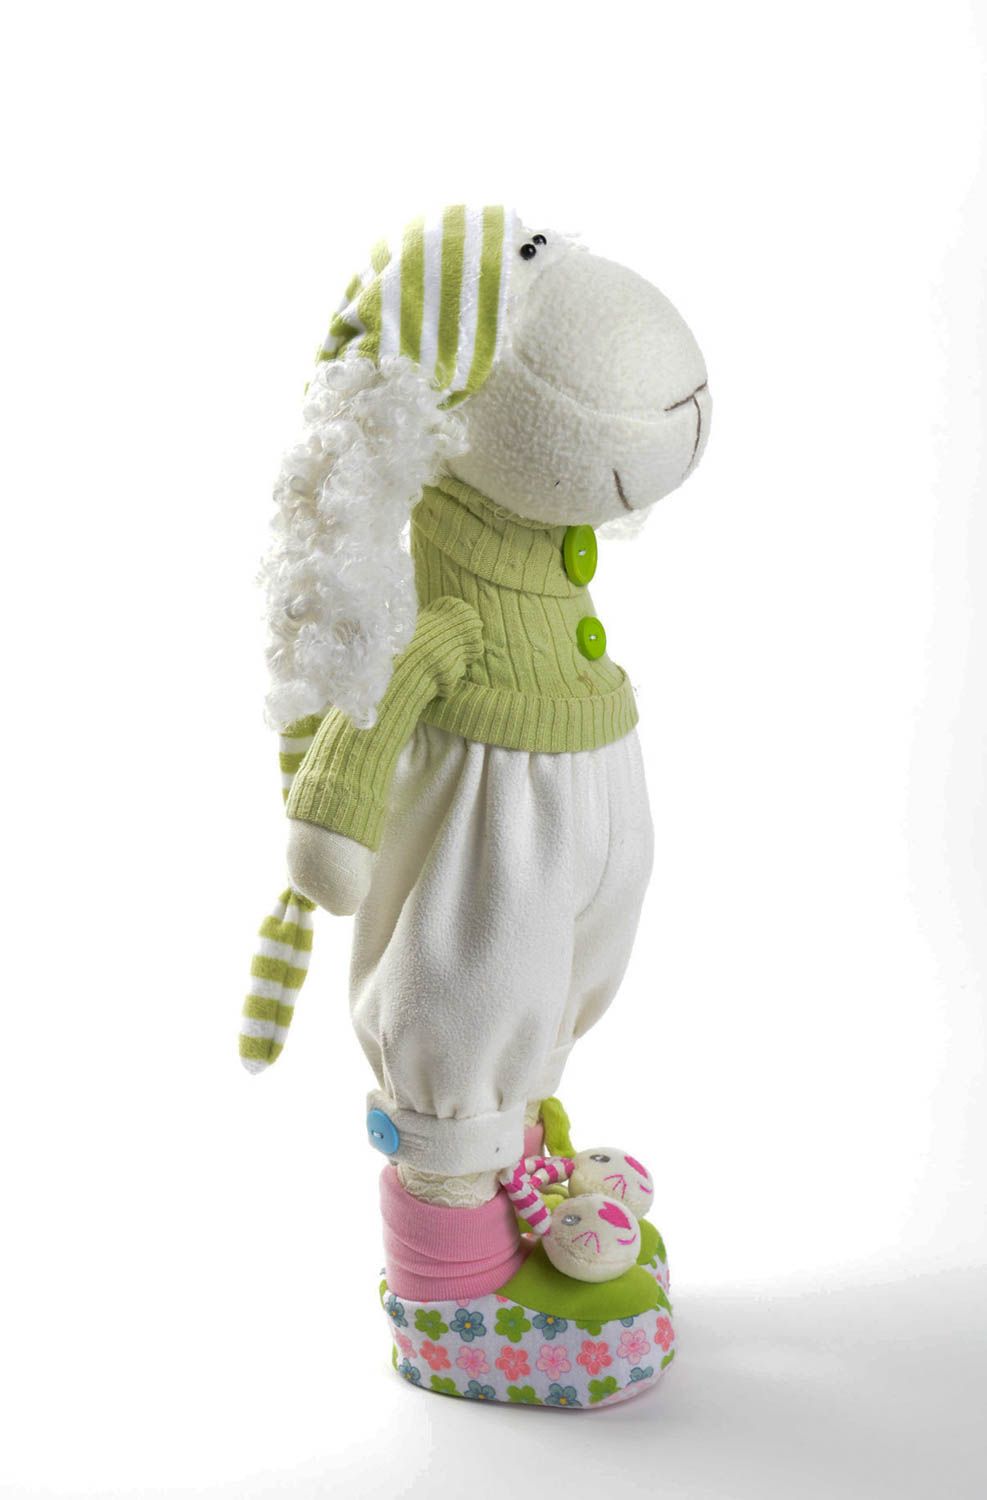 Игрушка овечка ручной работы детская игрушка красивая стильная мягкая игрушка фото 1